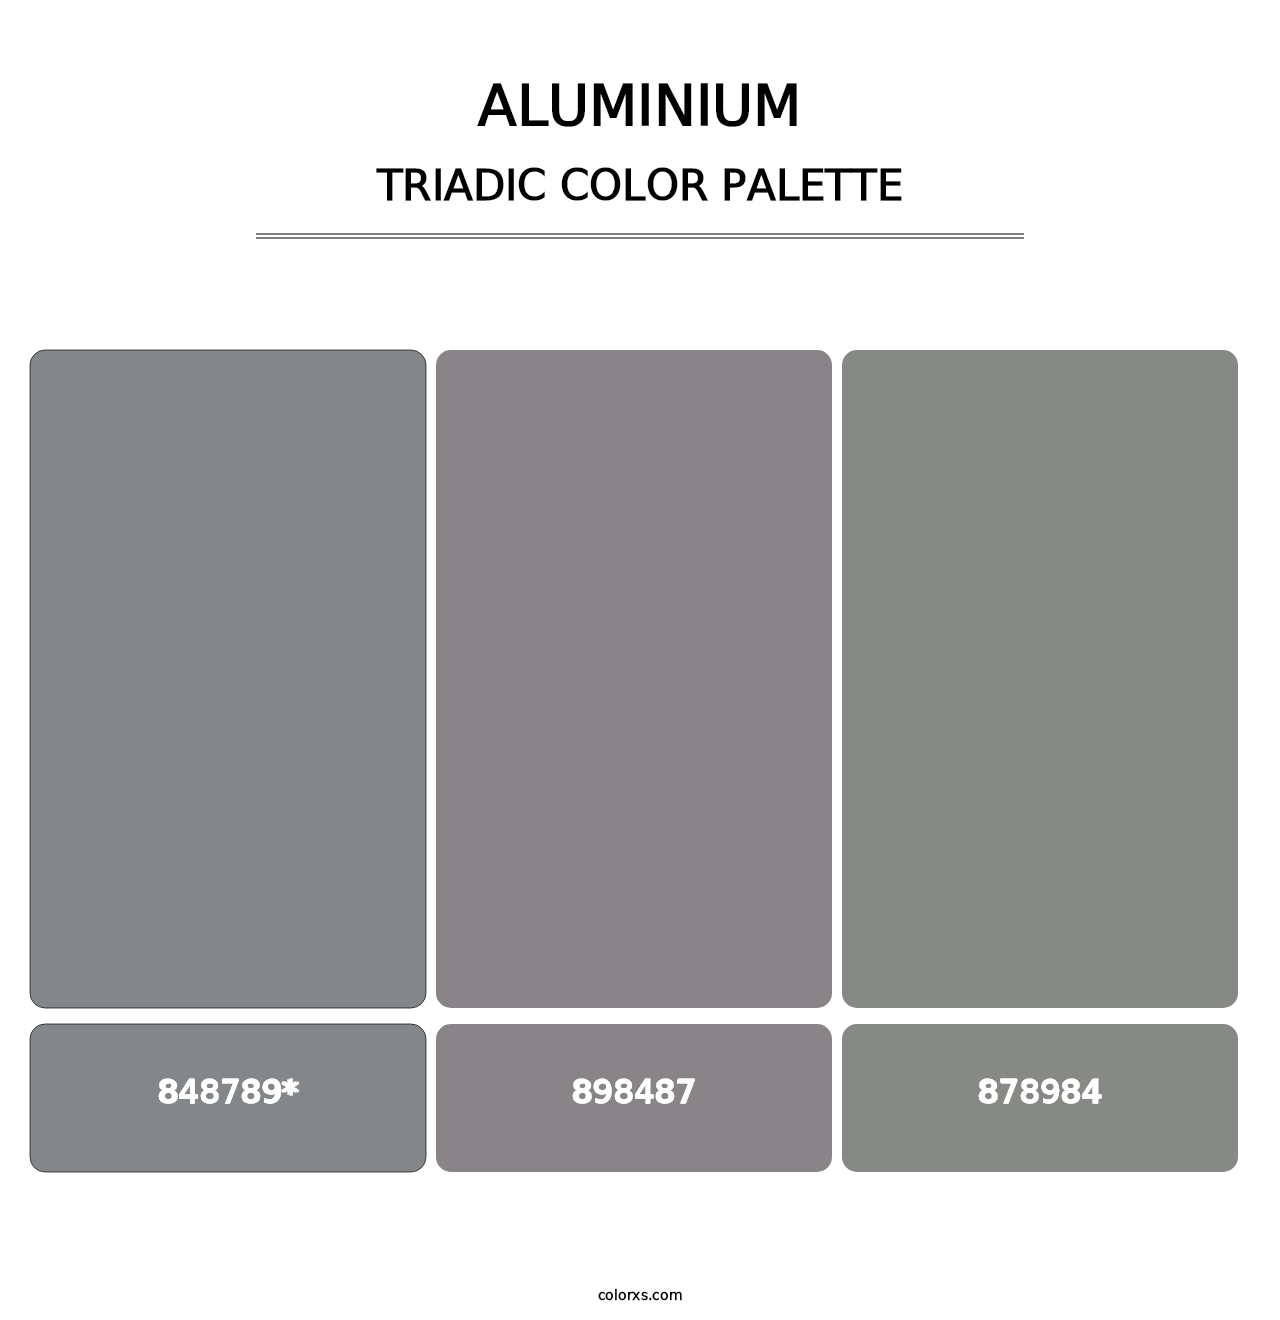 Aluminium - Triadic Color Palette